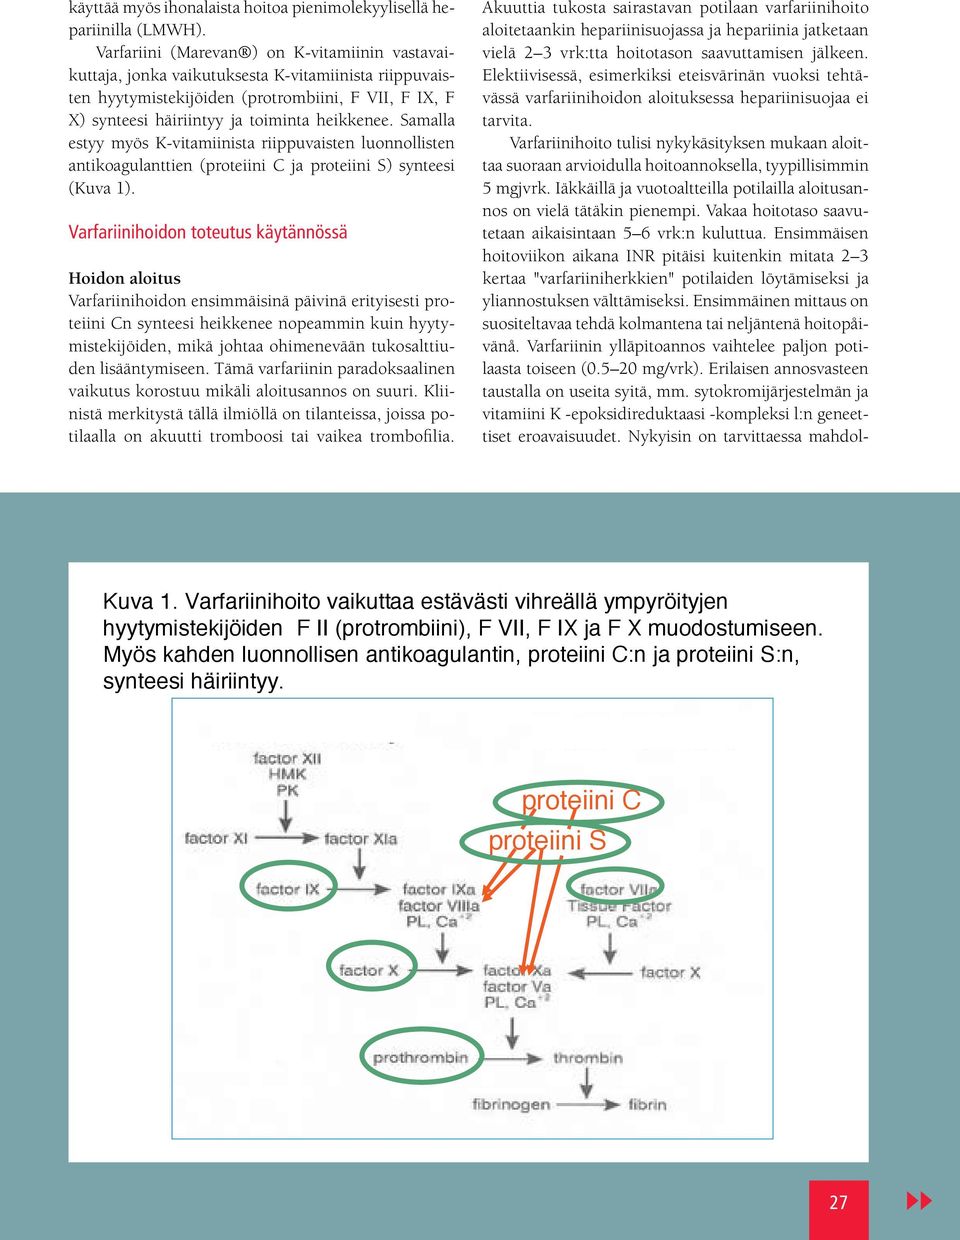 Samalla estyy myös K-vitamiinista riippuvaisten luonnollisten antikoagulanttien (proteiini C ja proteiini S) synteesi (Kuva 1).